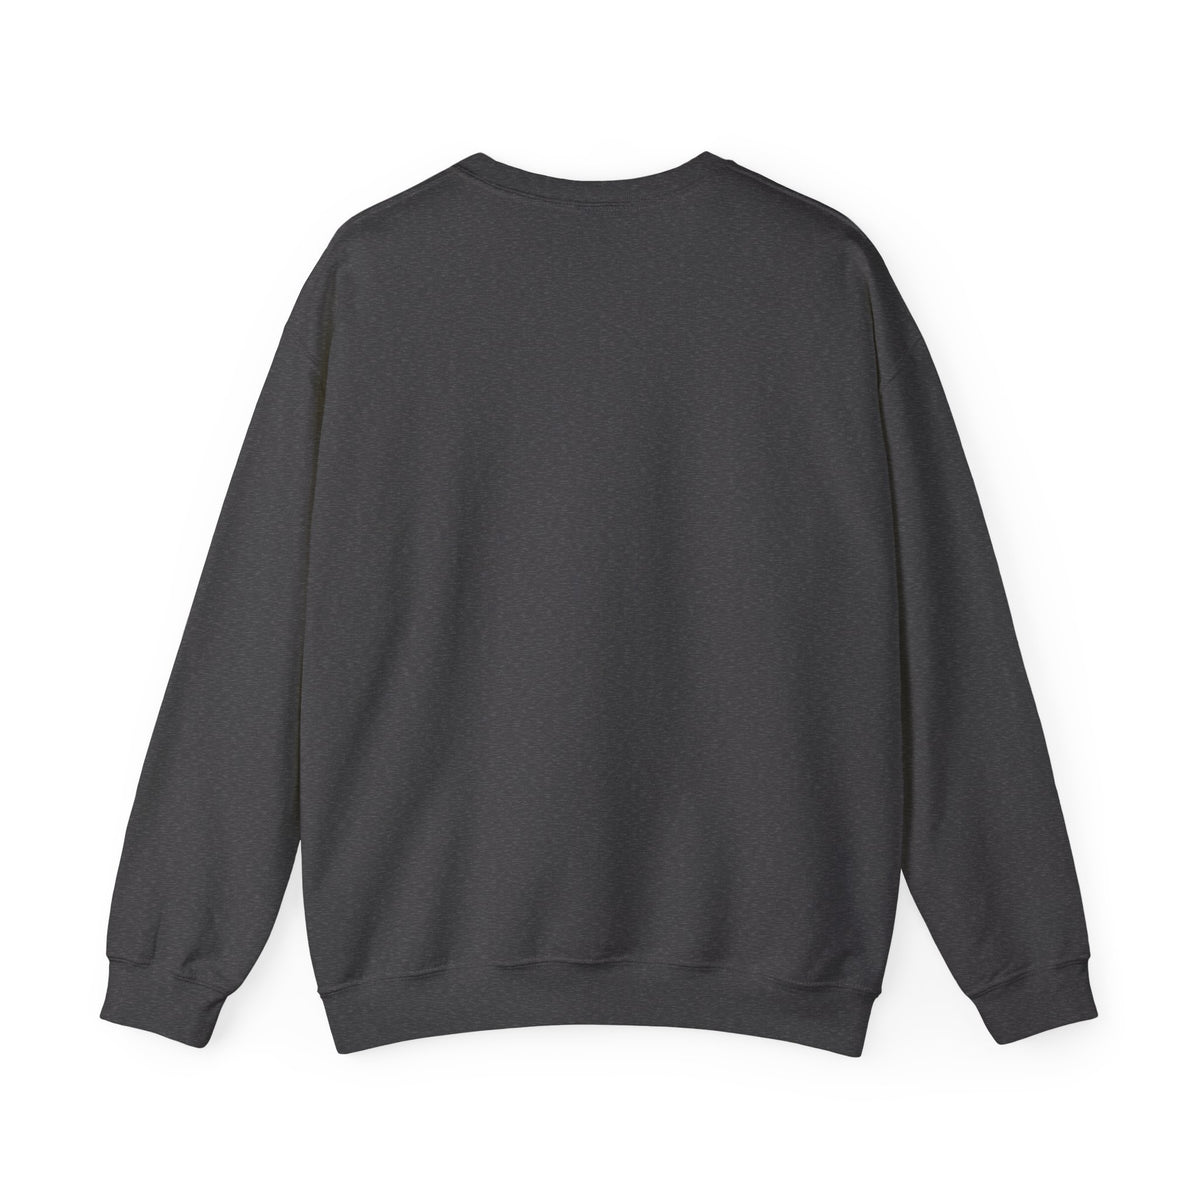 Mama Crewneck Sweatshirt | Mama and Mini Matching Sweatshirts